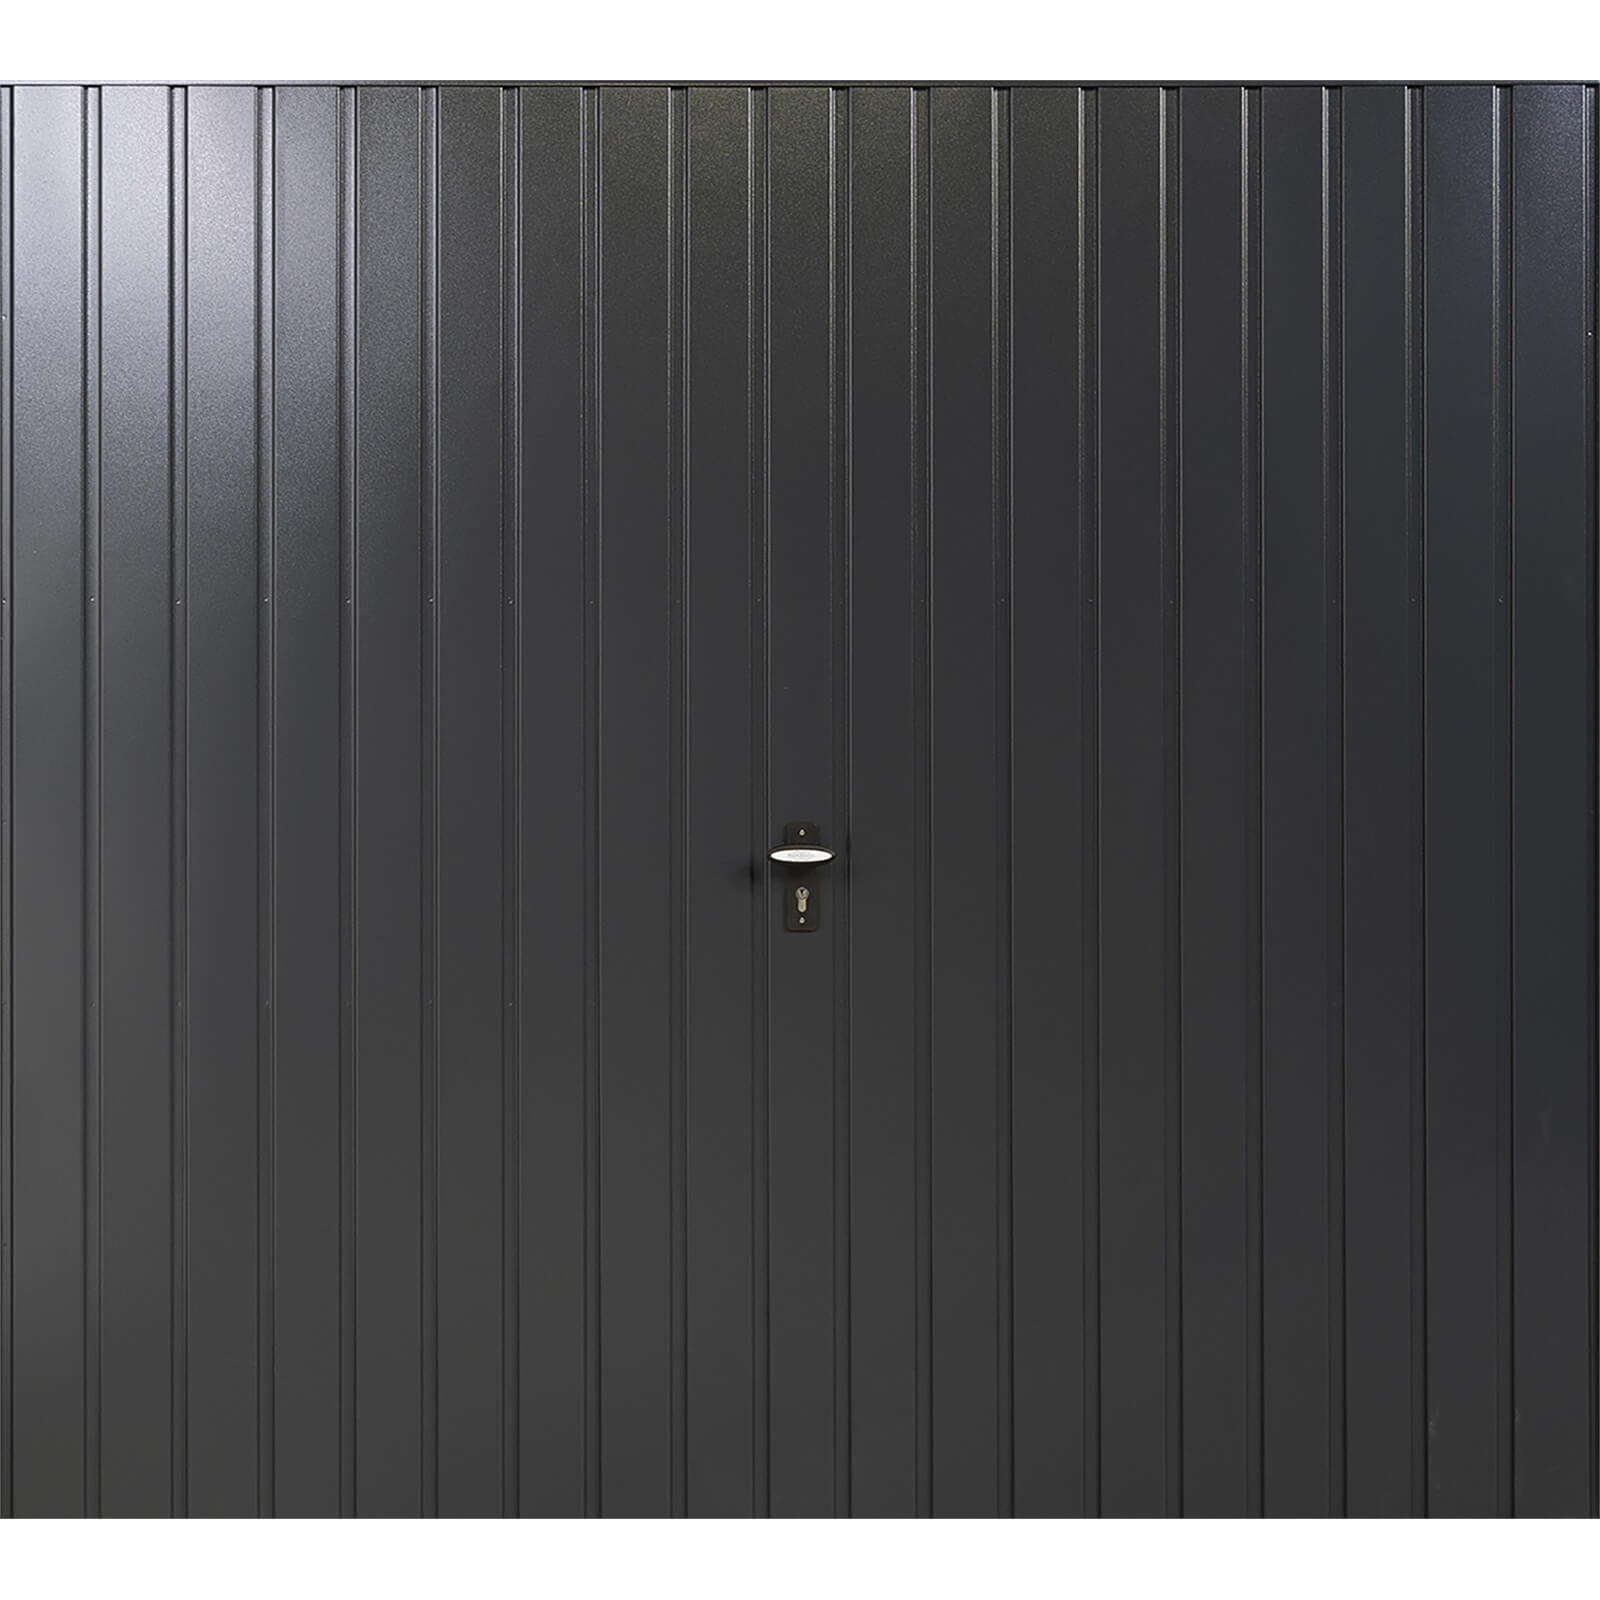 Vertical 7' x 7' Frameless Steel Garage Door Anthracite Grey